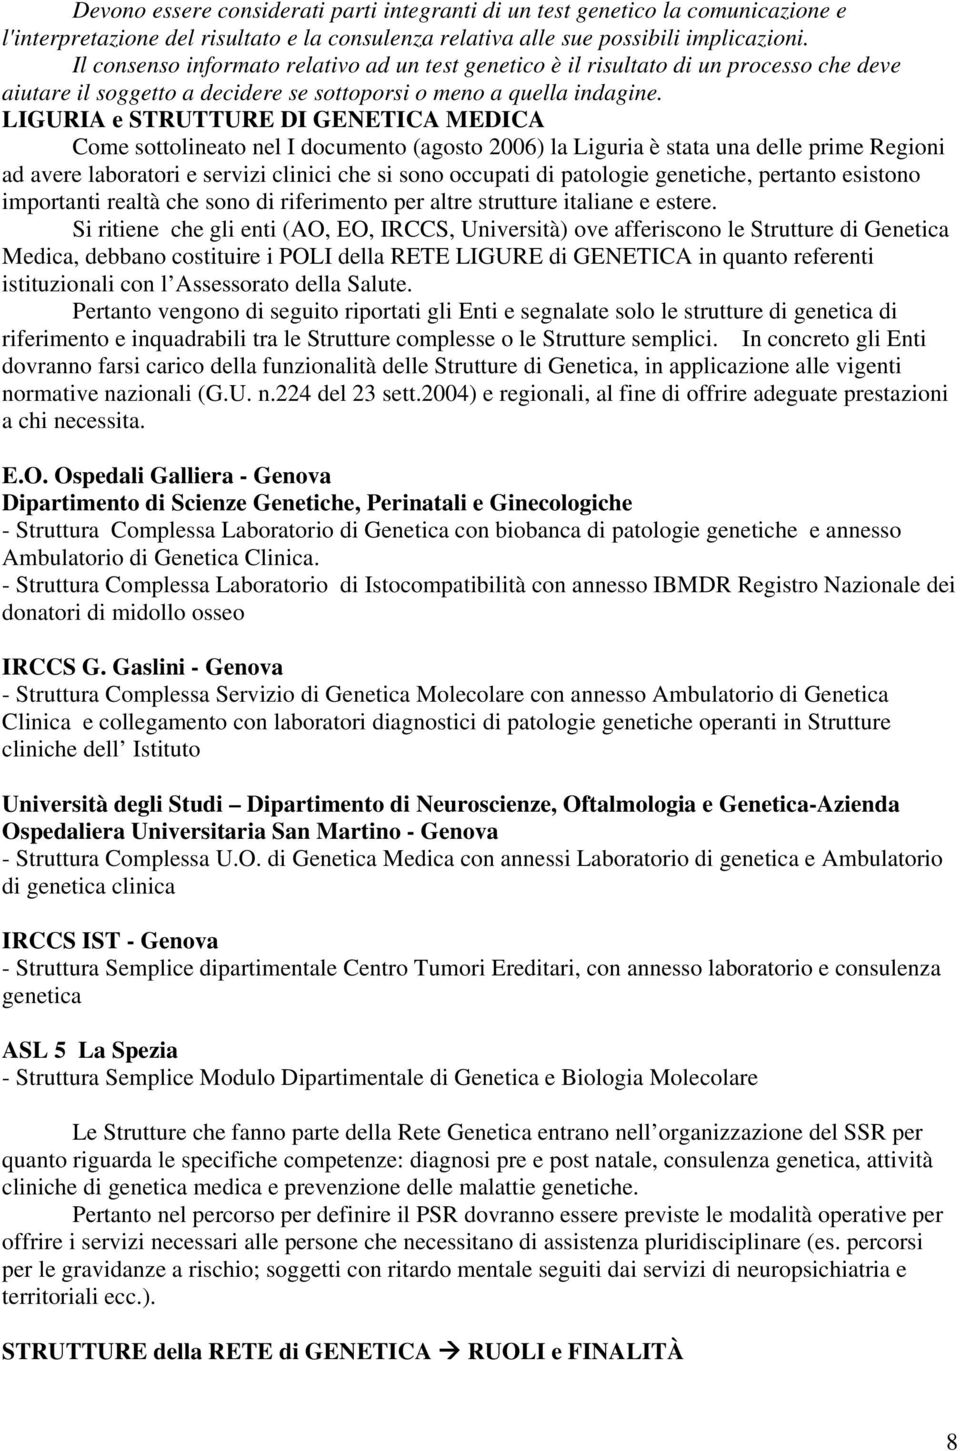 LIGURIA e STRUTTURE DI GENETICA MEDICA Come sottolineato nel I documento (agosto 2006) la Liguria è stata una delle prime Regioni ad avere laboratori e servizi clinici che si sono occupati di